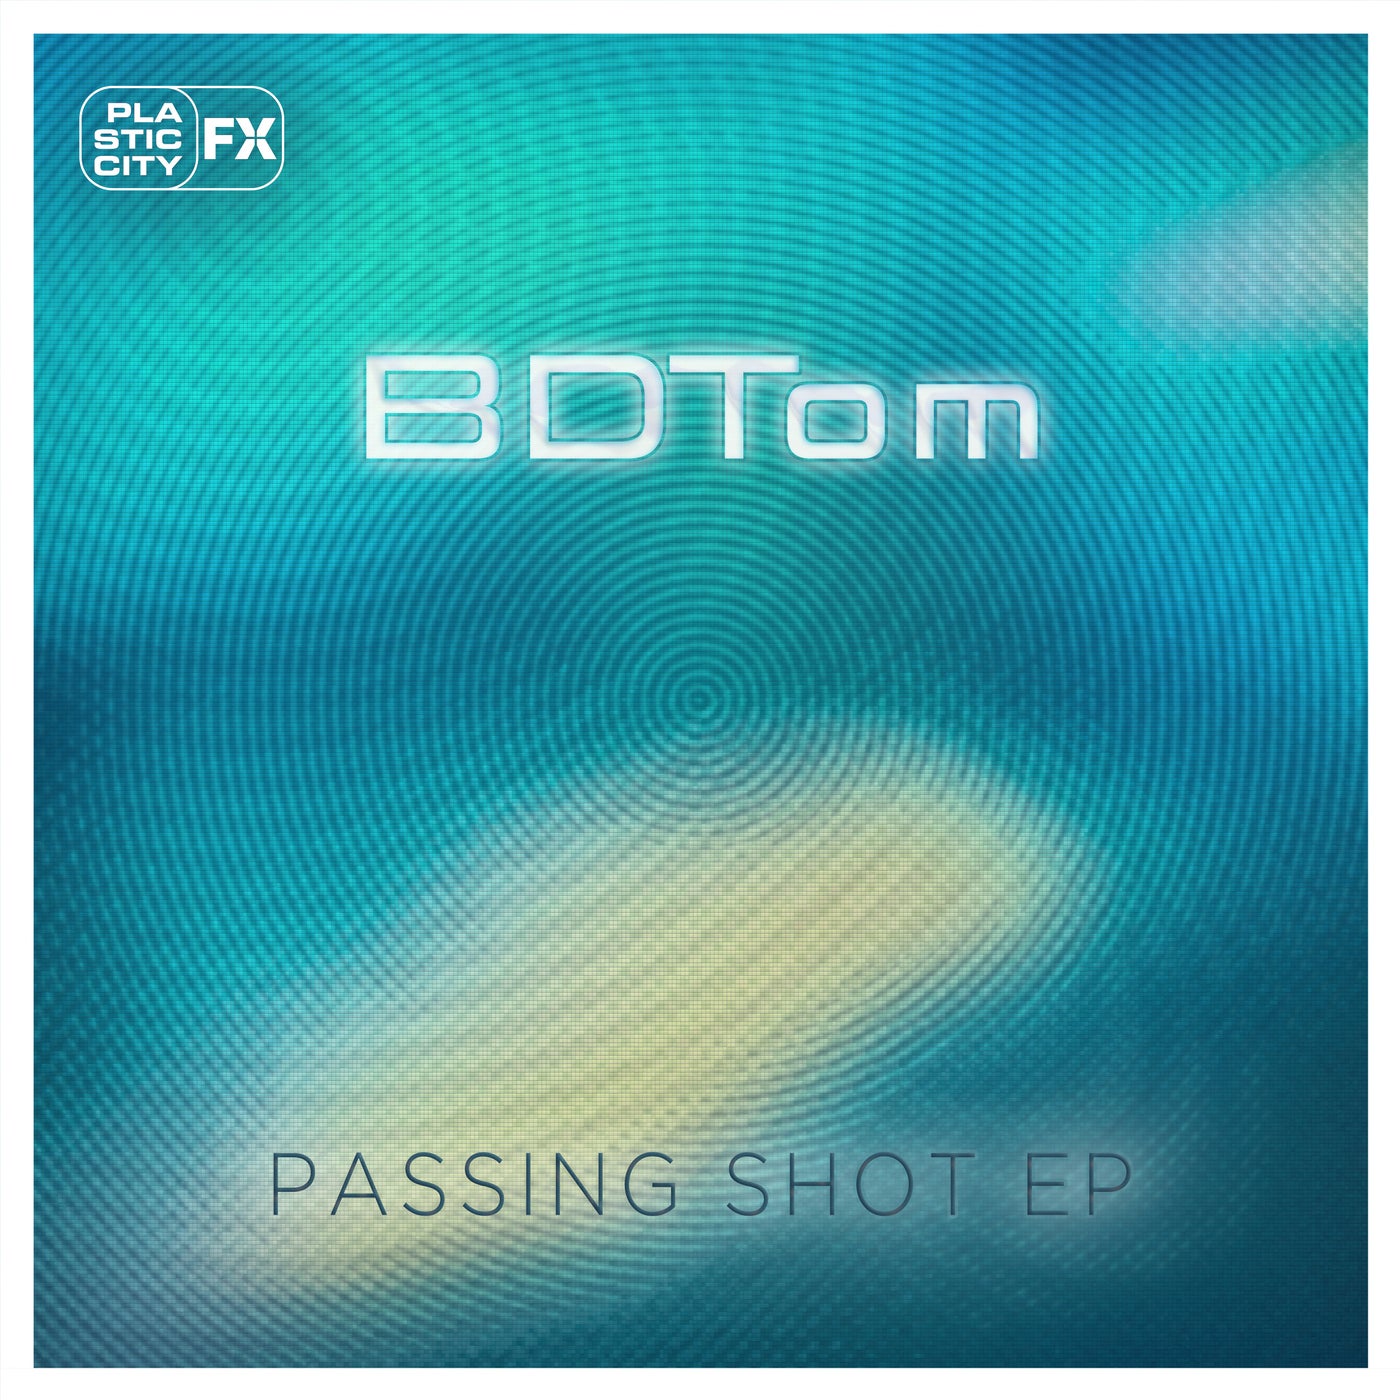 bdtom – Passing Shot EP [PCFX024]